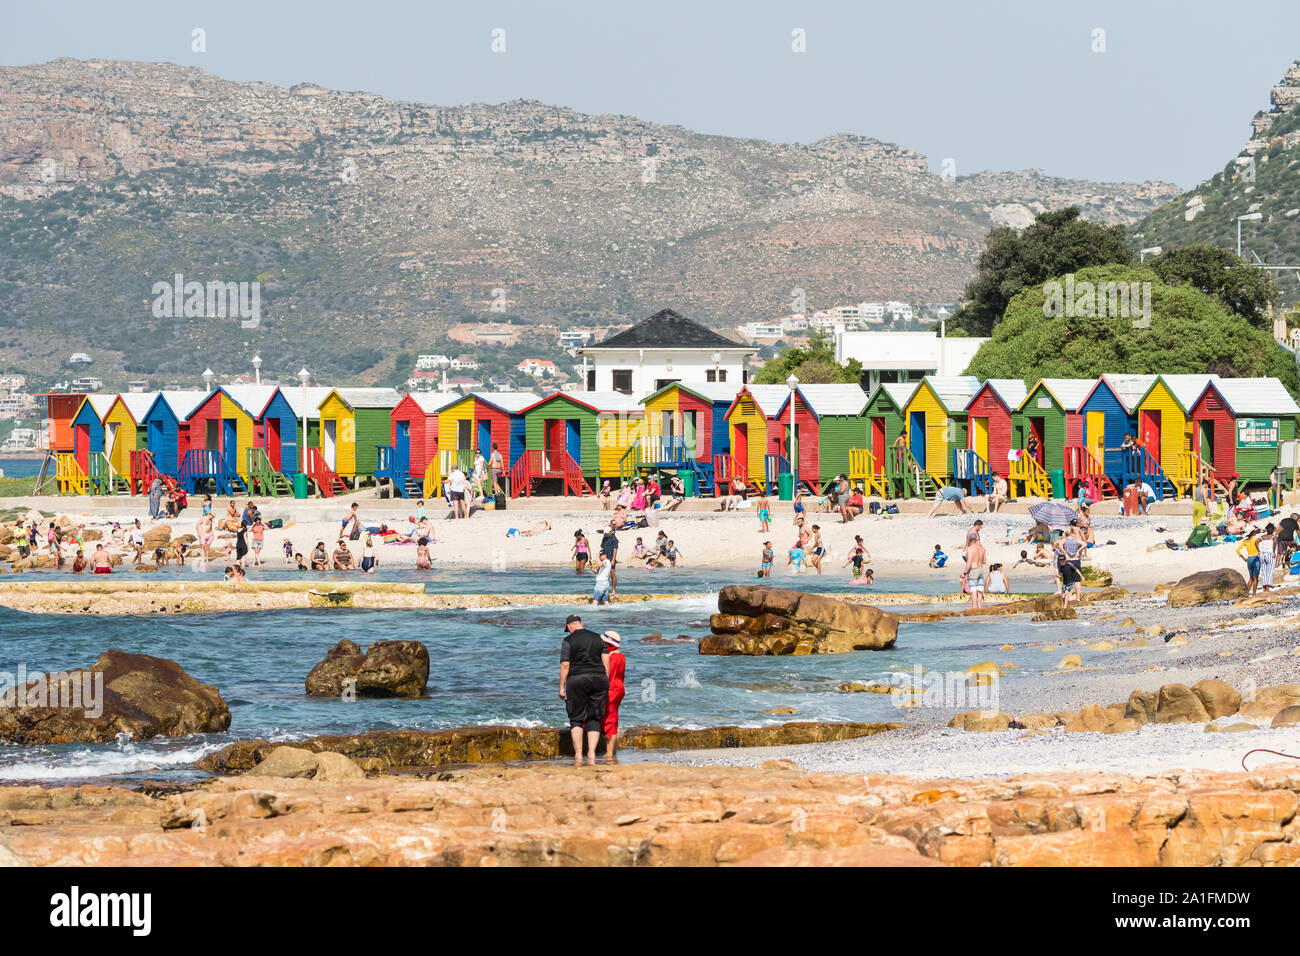 Cabine sulla spiaggia, a St James,Cape Peninsula, Cape Town, Sud Africa,luminose e colorate, con la folla di persone o beachgoers godendo il tempo libero in Estate Foto Stock